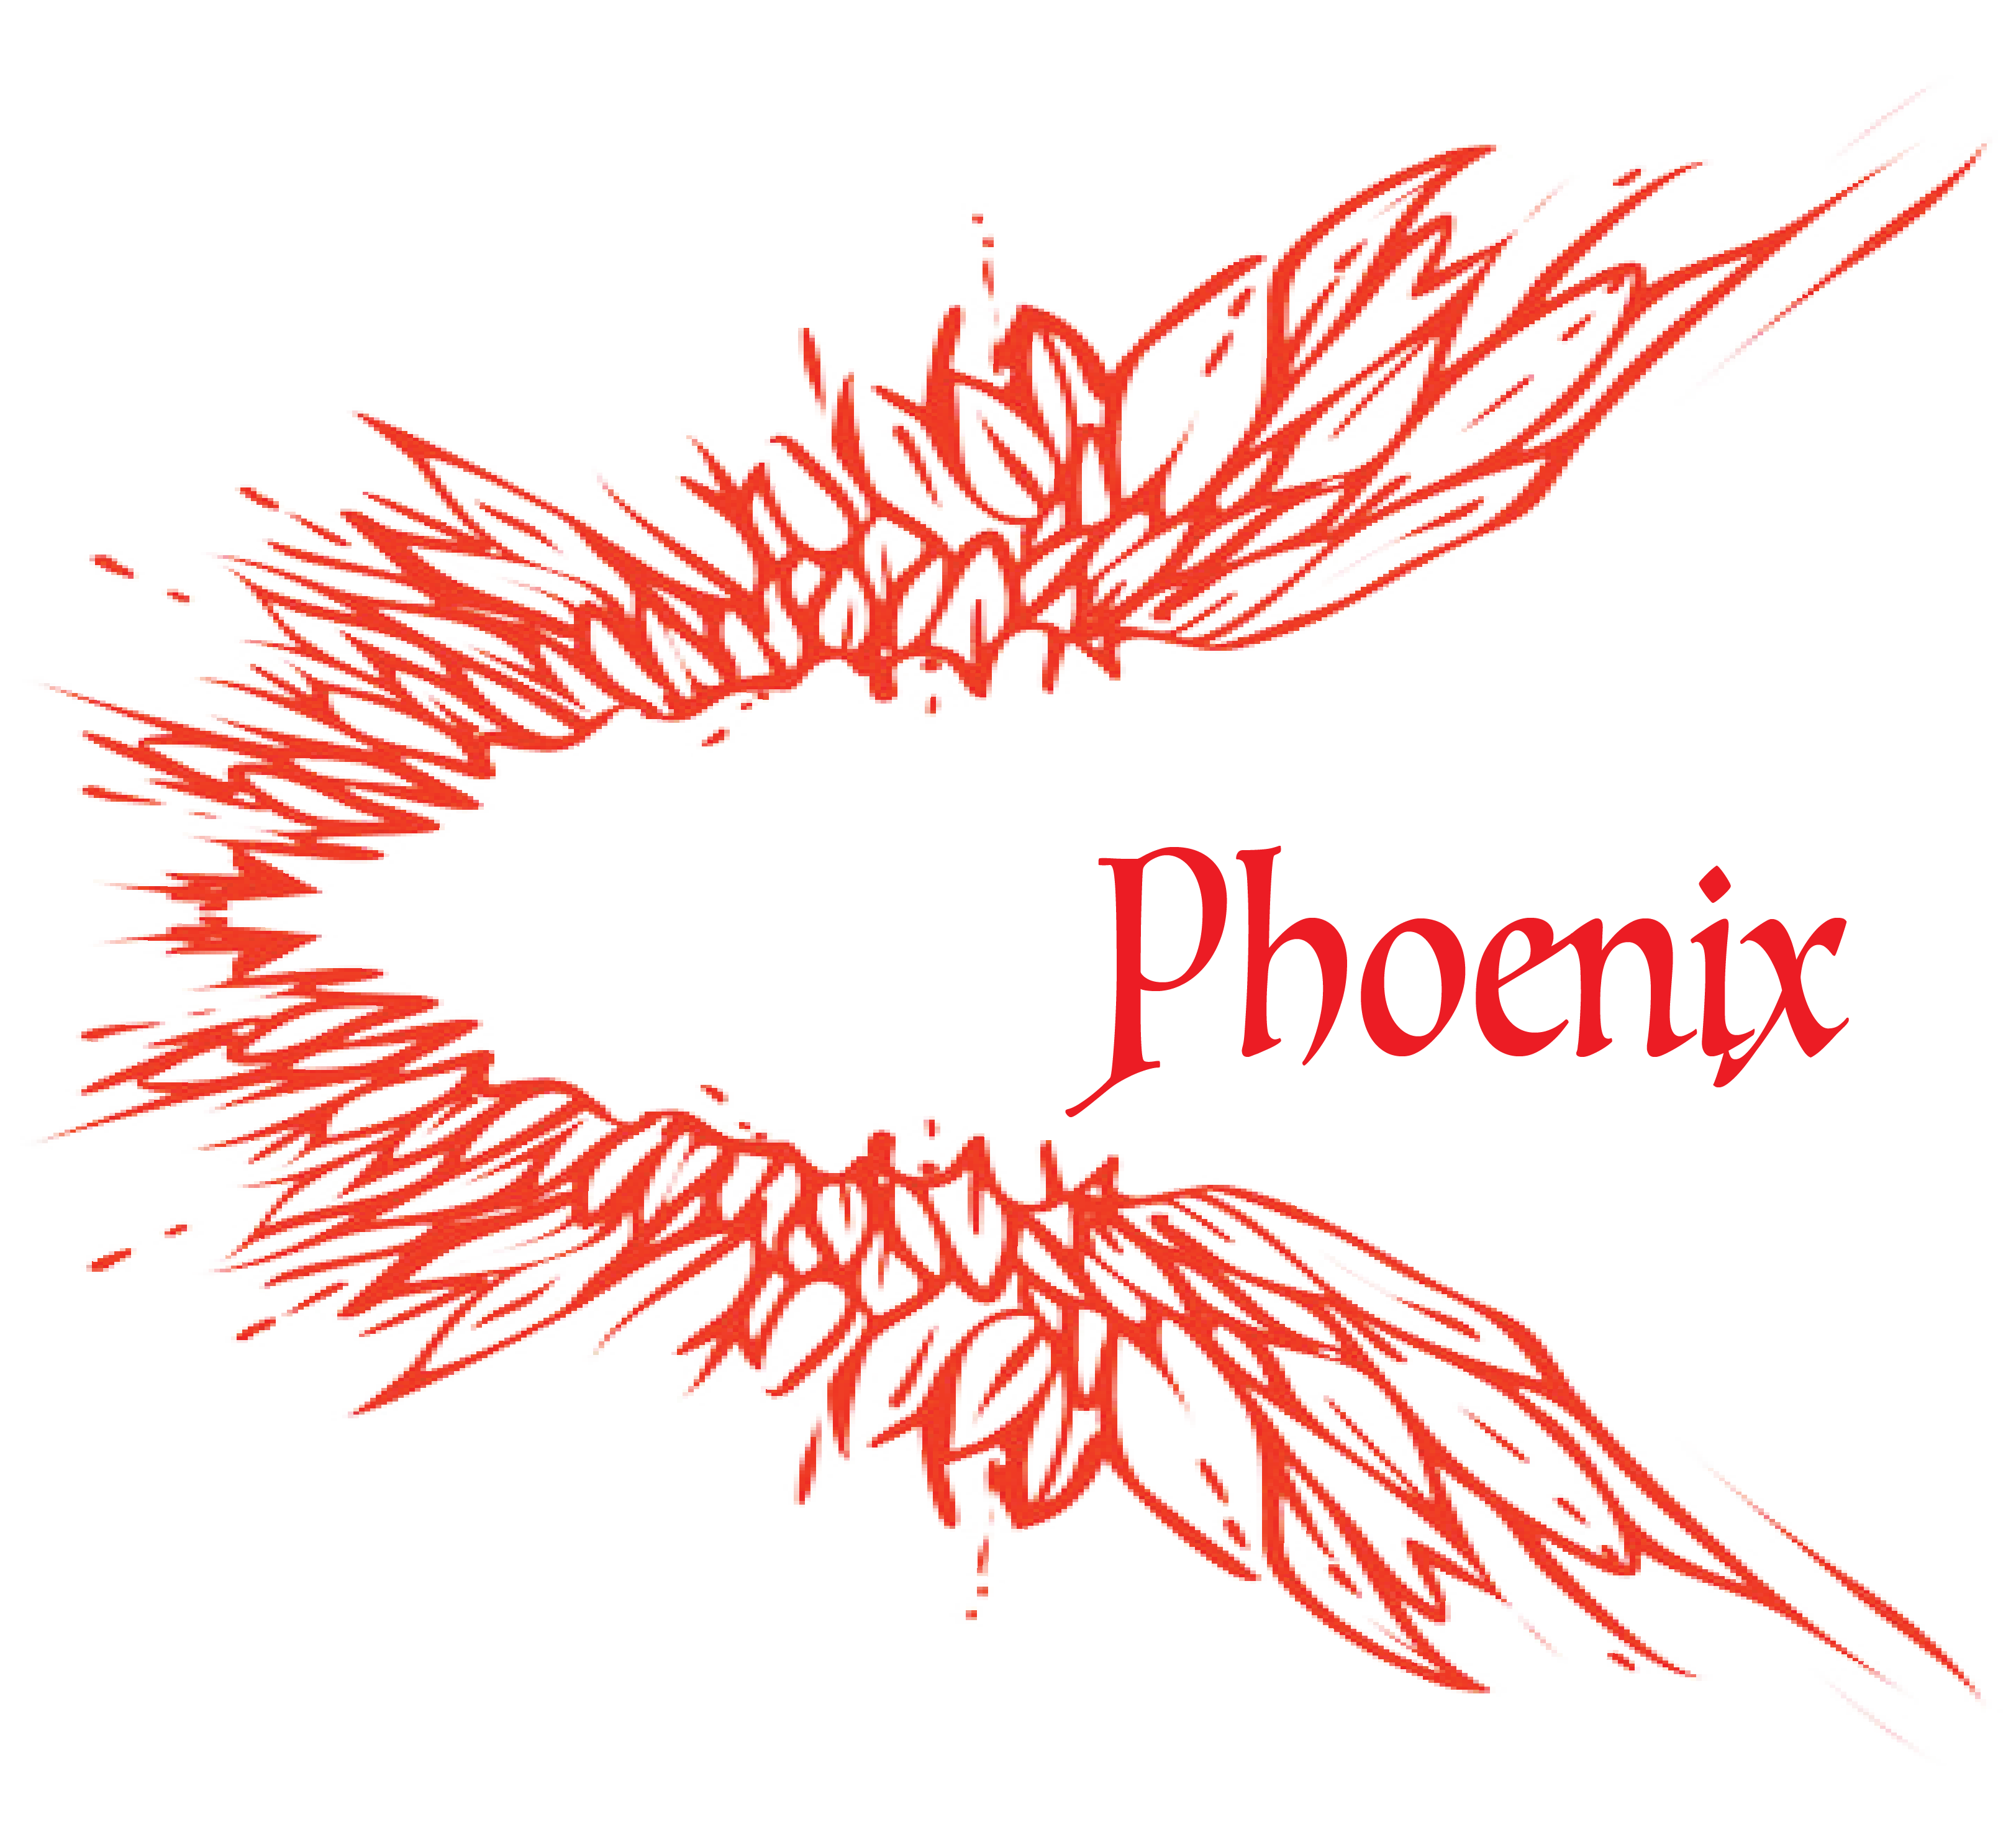 The Coding Phoenix